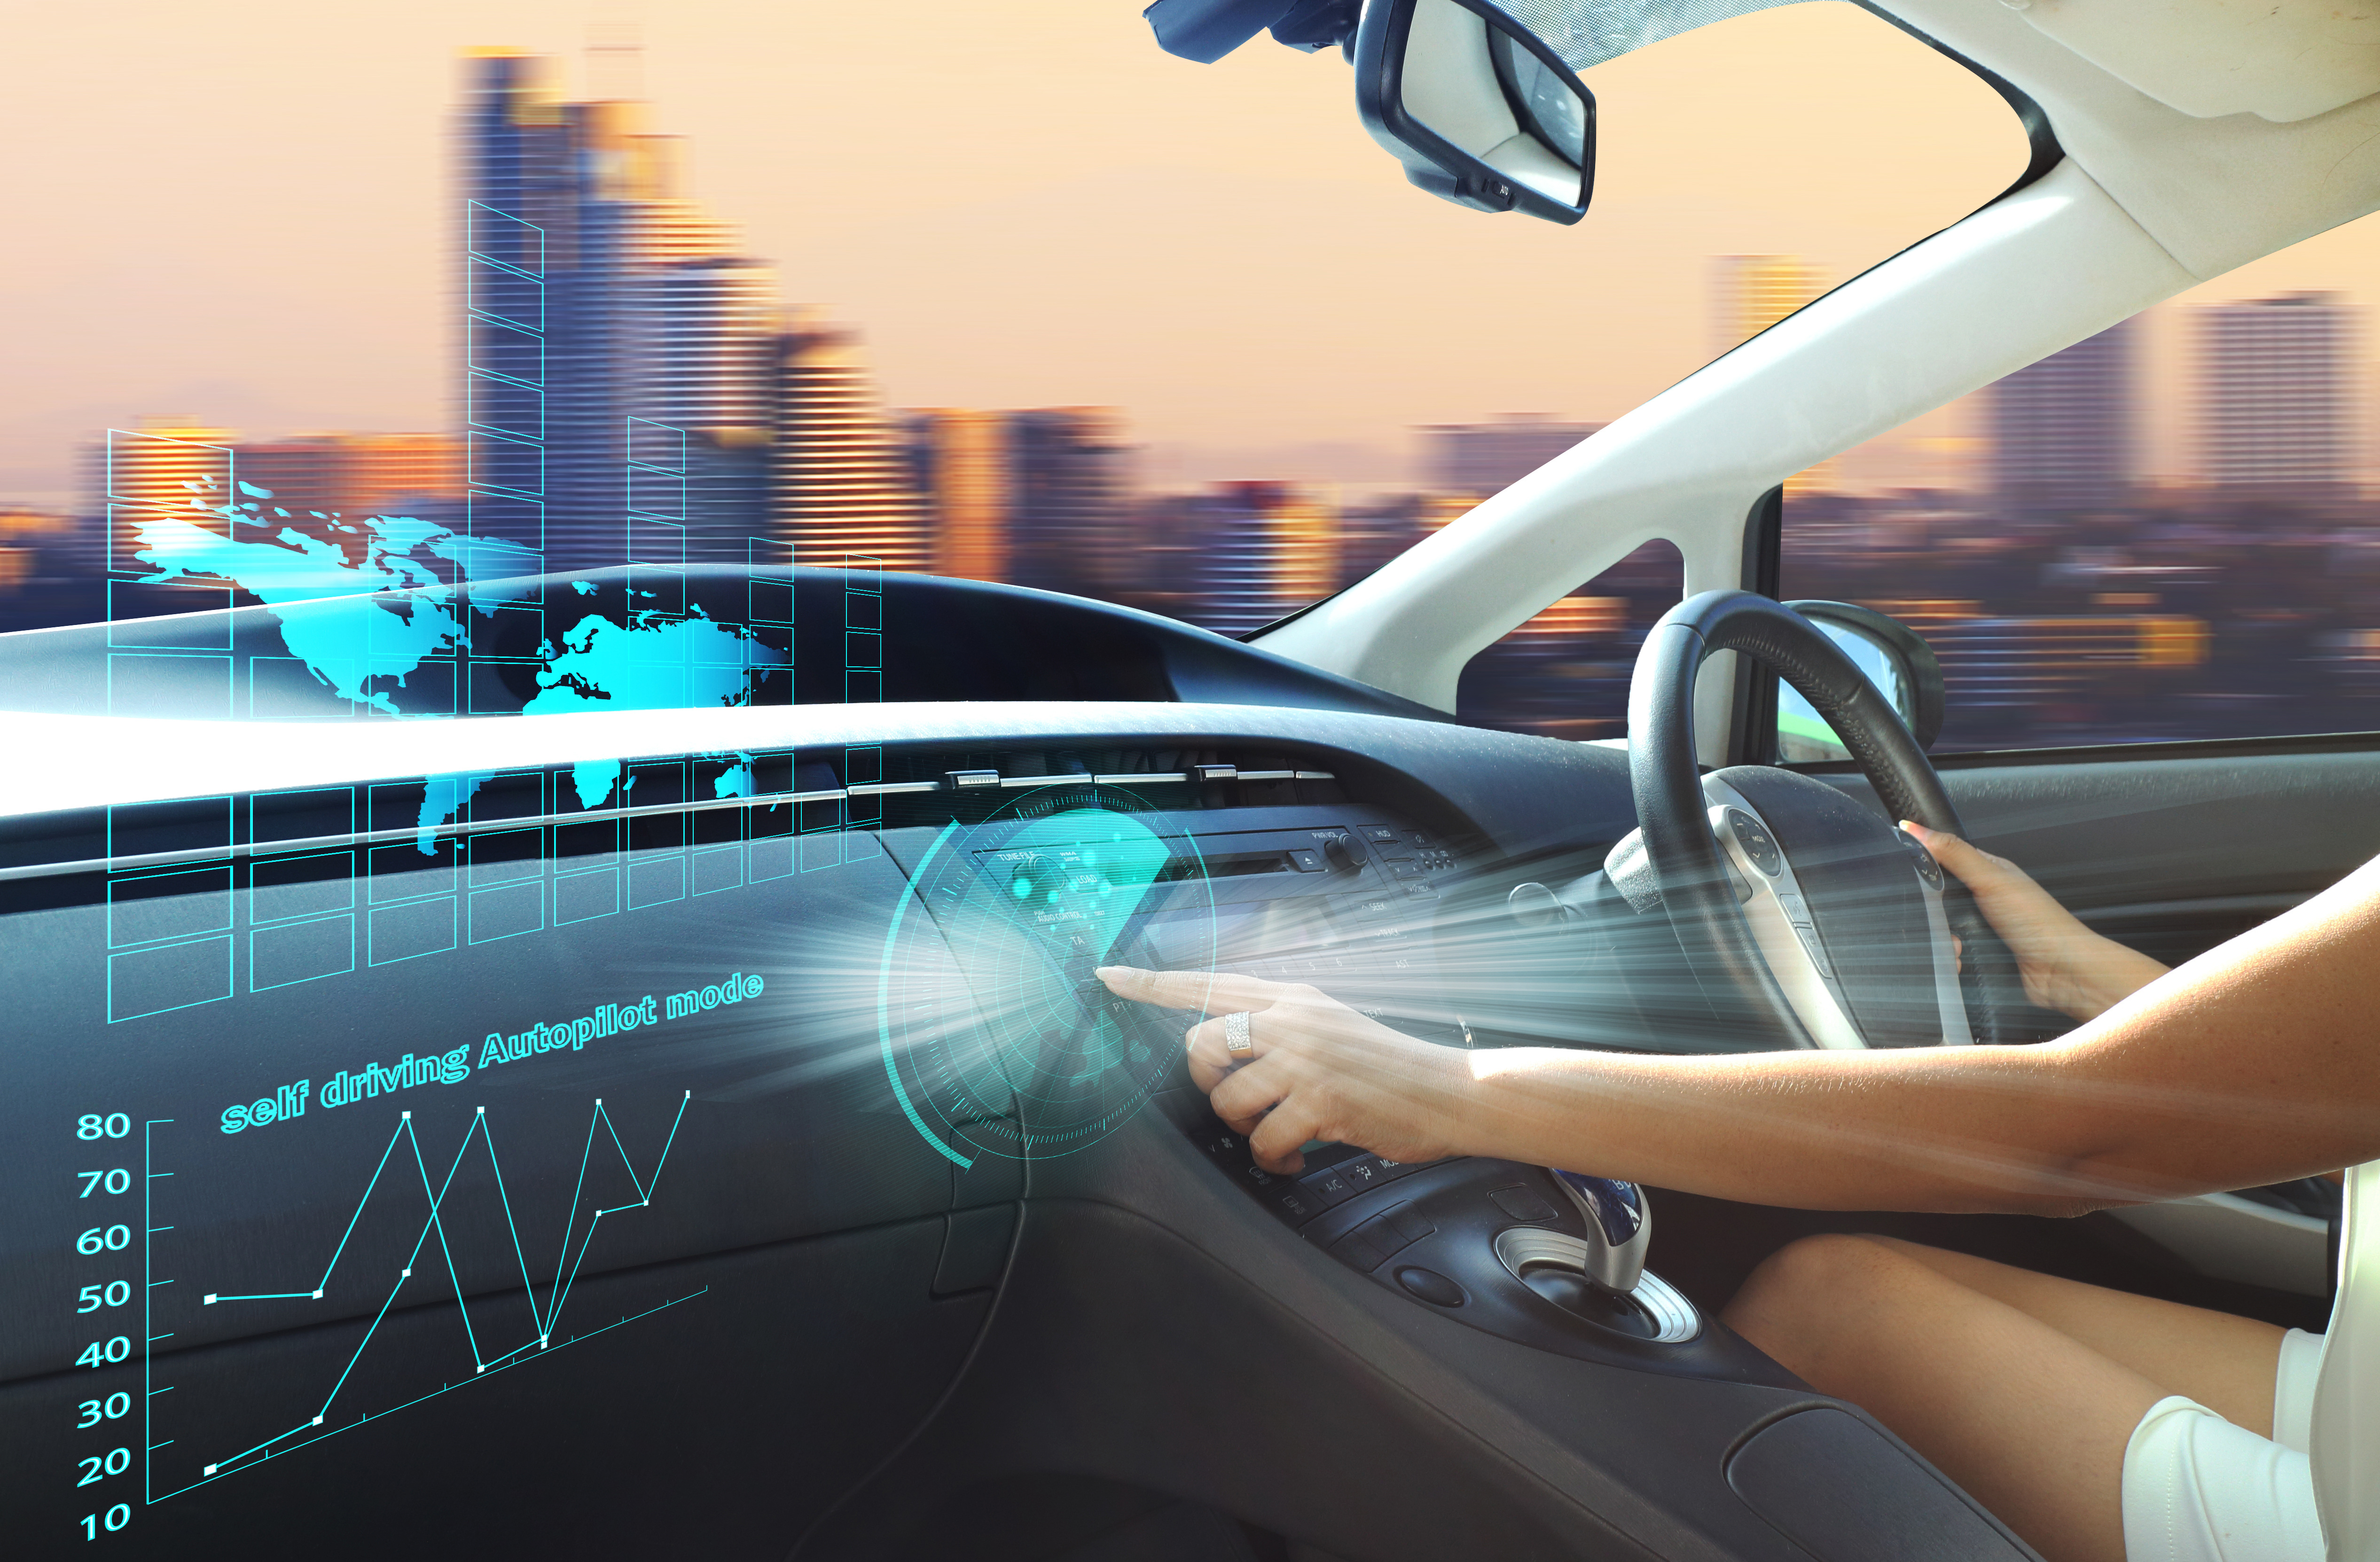 Autonomous Driving Application